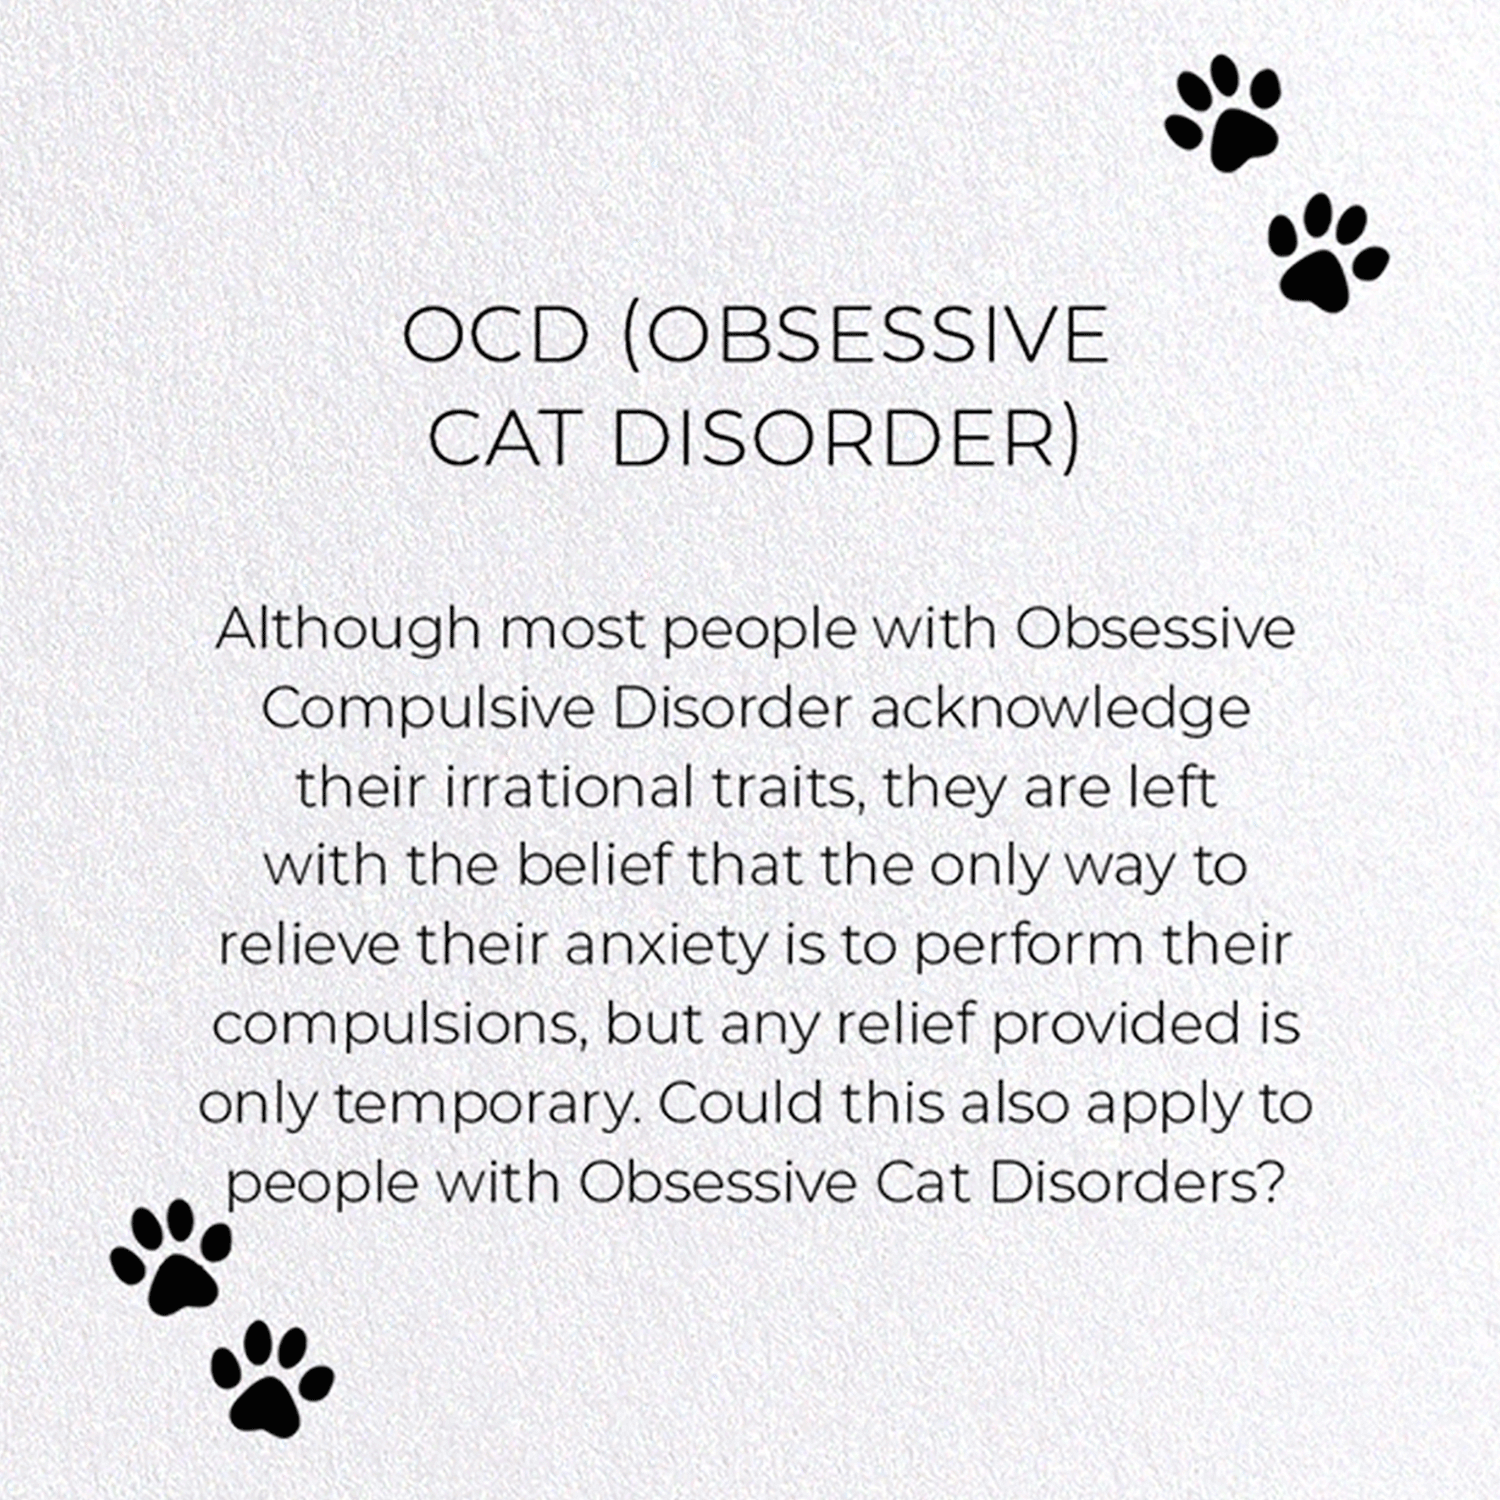 OCD (OBSESSIVE CAT DISORDER)